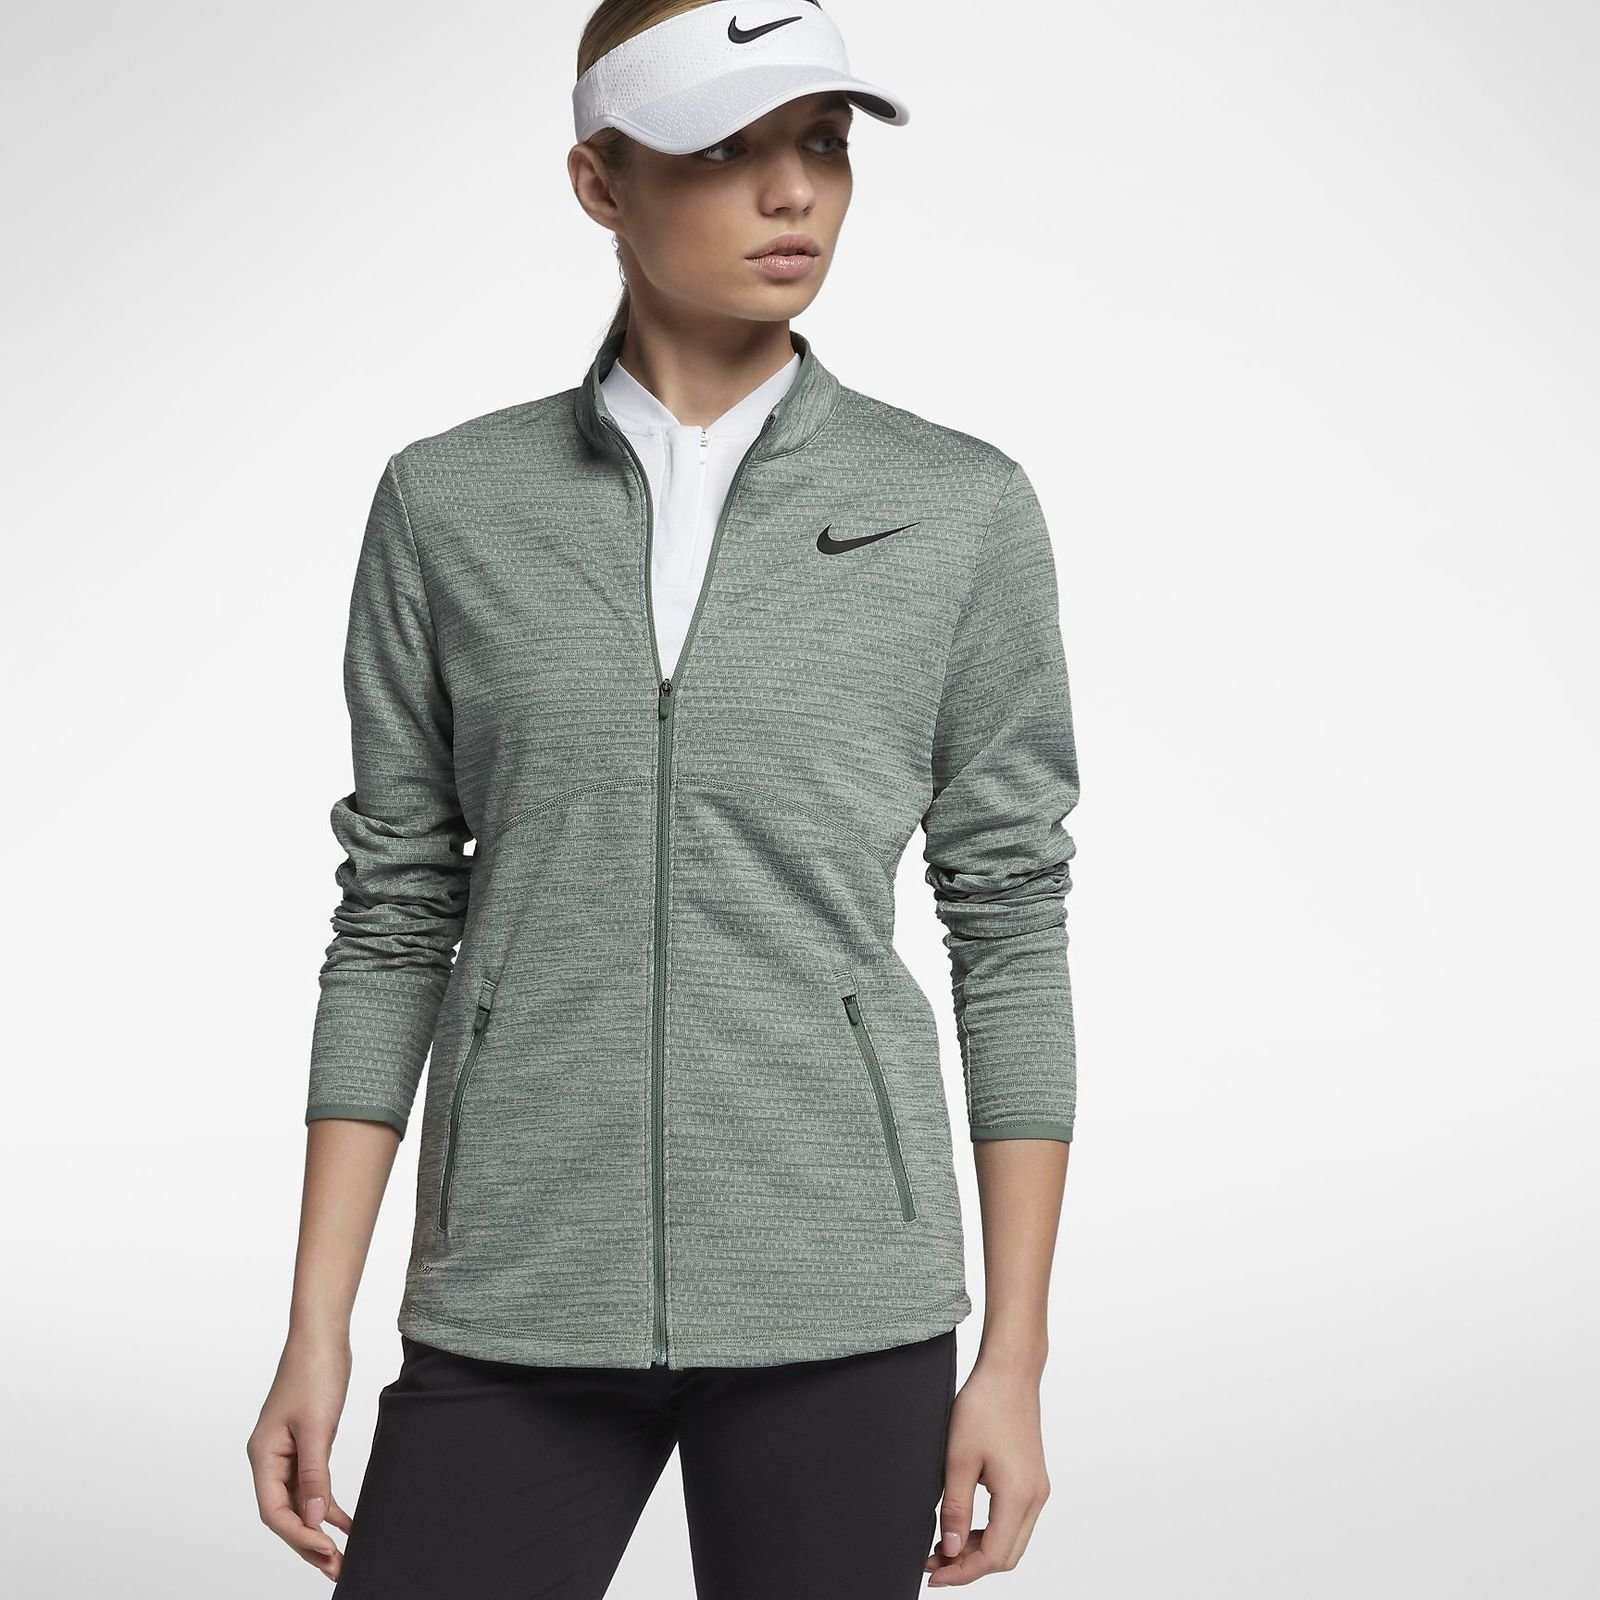 Jachetă impermeabilă Nike Womens Dry Top Hz Clay Green/Black S